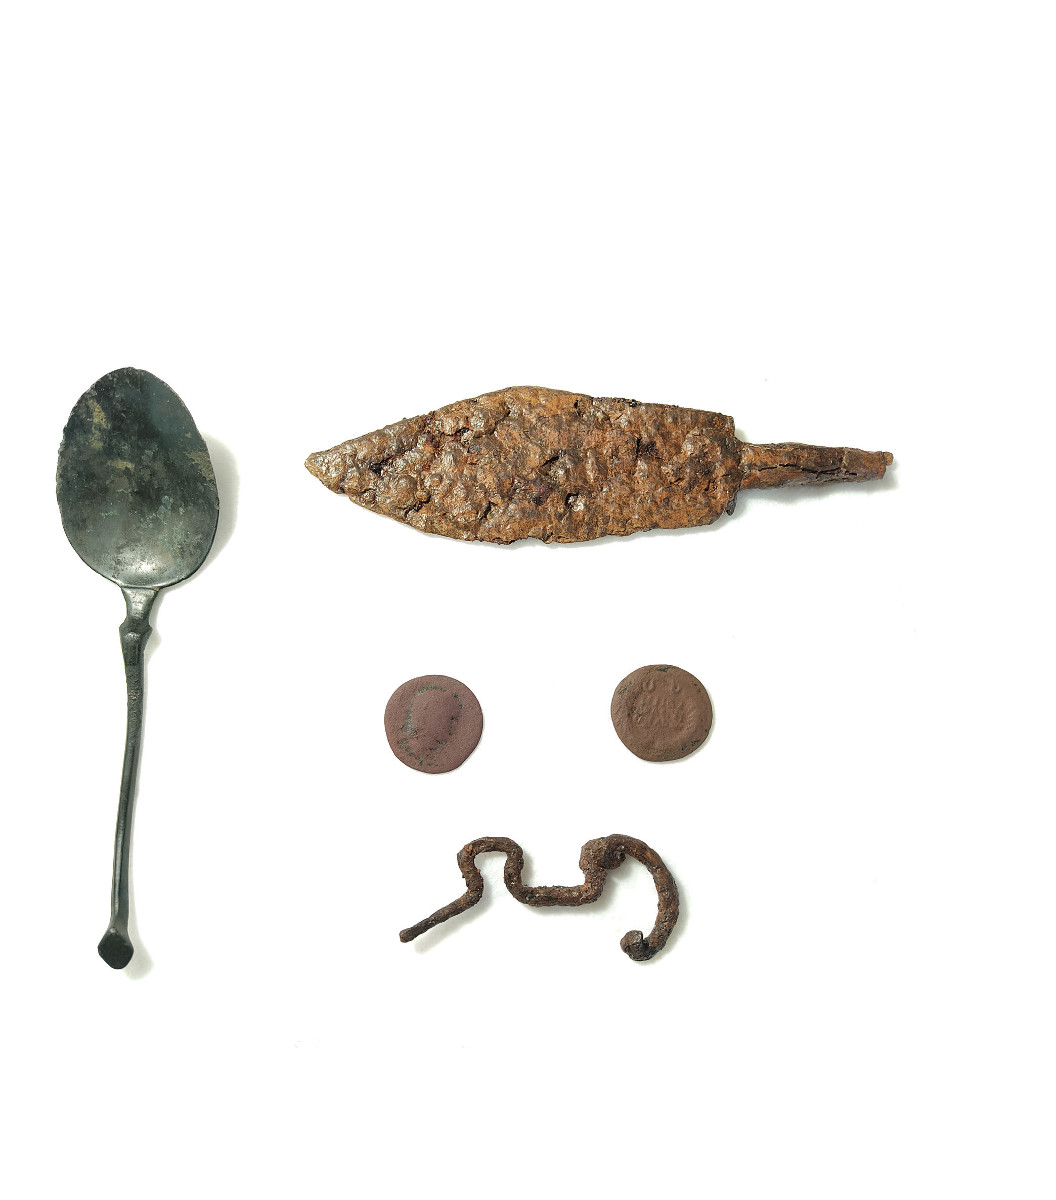 Pannello 2 - Foto 4: Fibula da Rocca Pia (Età del Ferro, VI-V sec. a.C.), cucchiaio e monete (epoca romana, I-III sec. d.C.), coltello (IV sec. d.C.) | conservati presso la Fondazione MCR